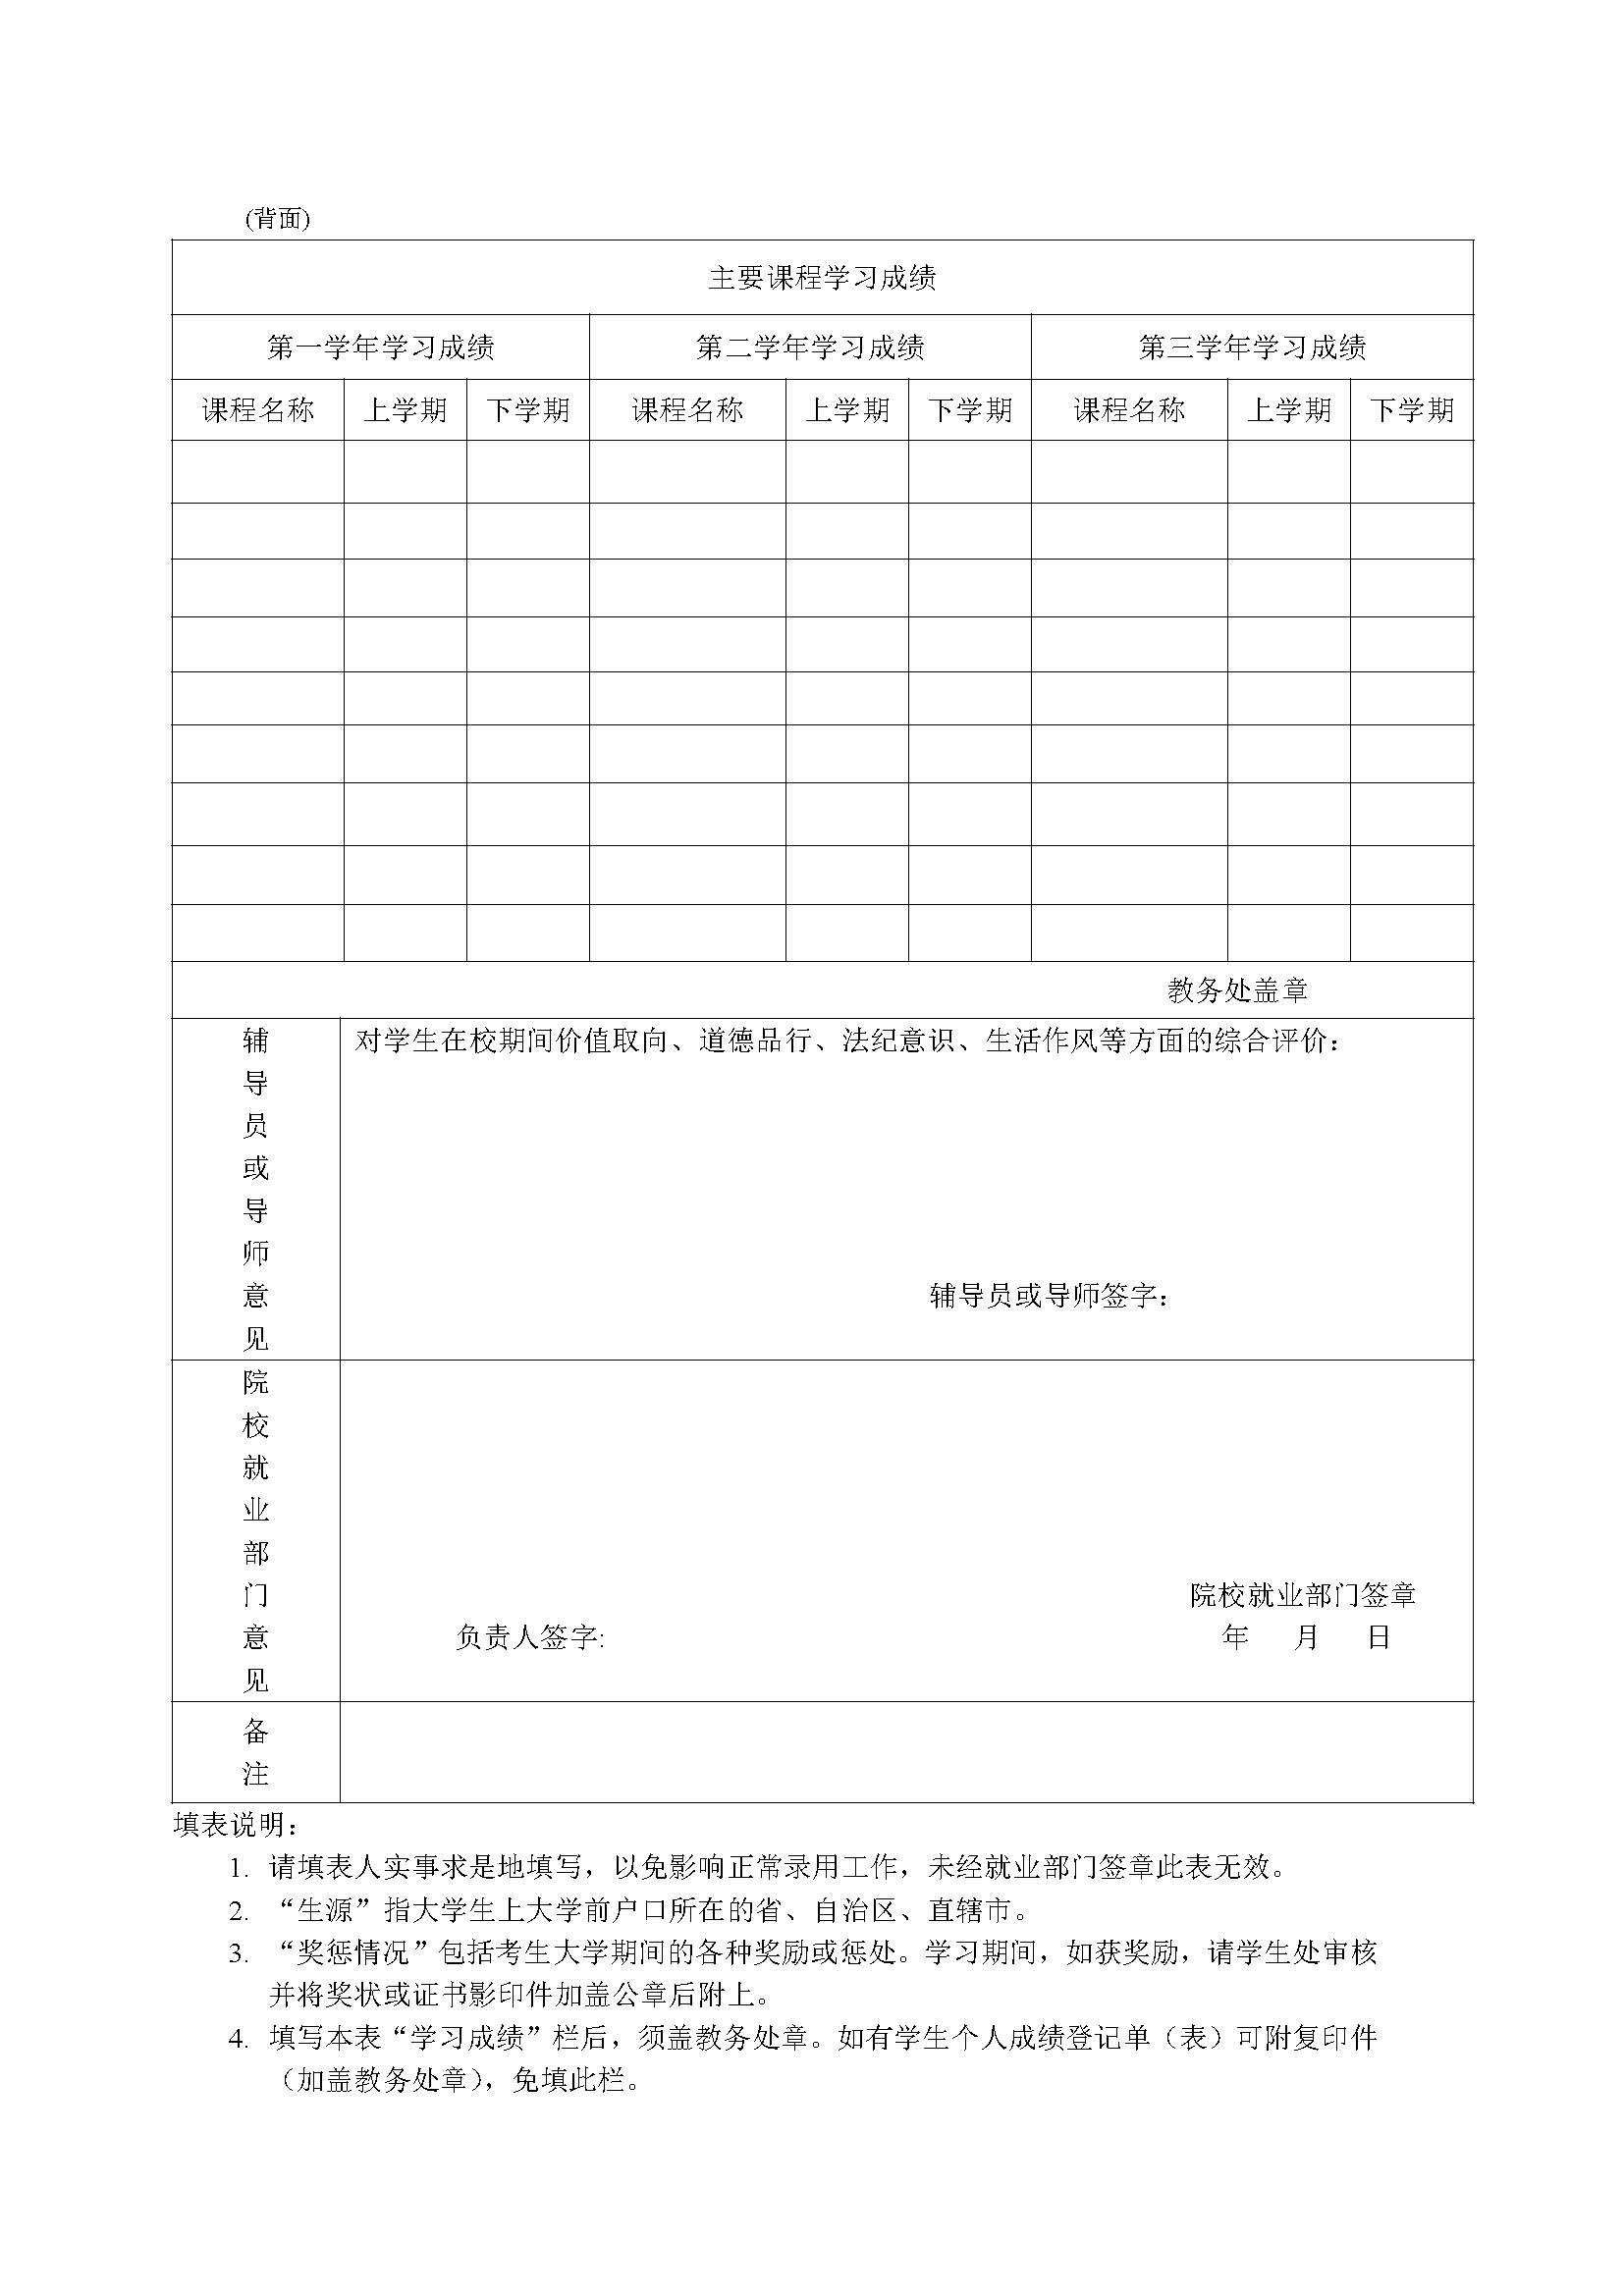 2021年江苏省省级机关公开遴选和公开选调公务员面试公告发布+资格复审时间 - 知乎